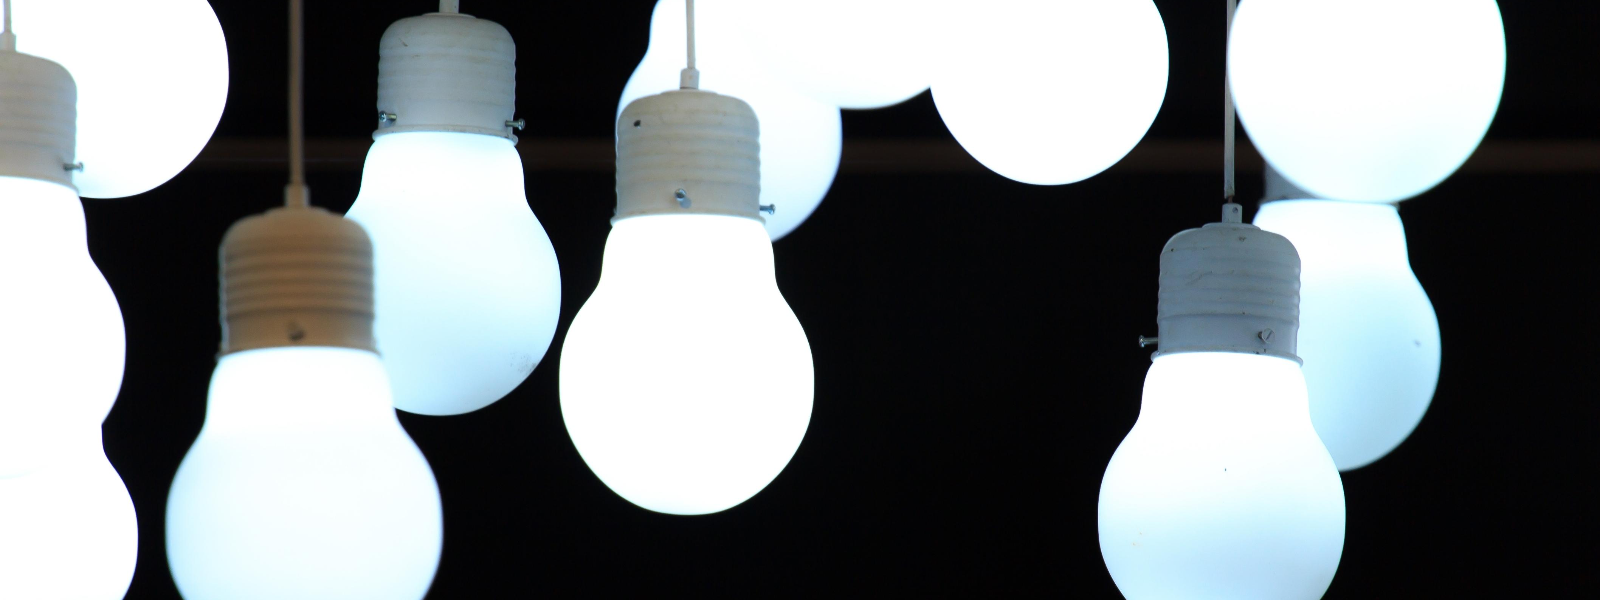 42DEL OÜ - Oleme spetsialiseerunud kvaliteetsete LED-valgustite ja juhtimissüsteemide pakkumisele.